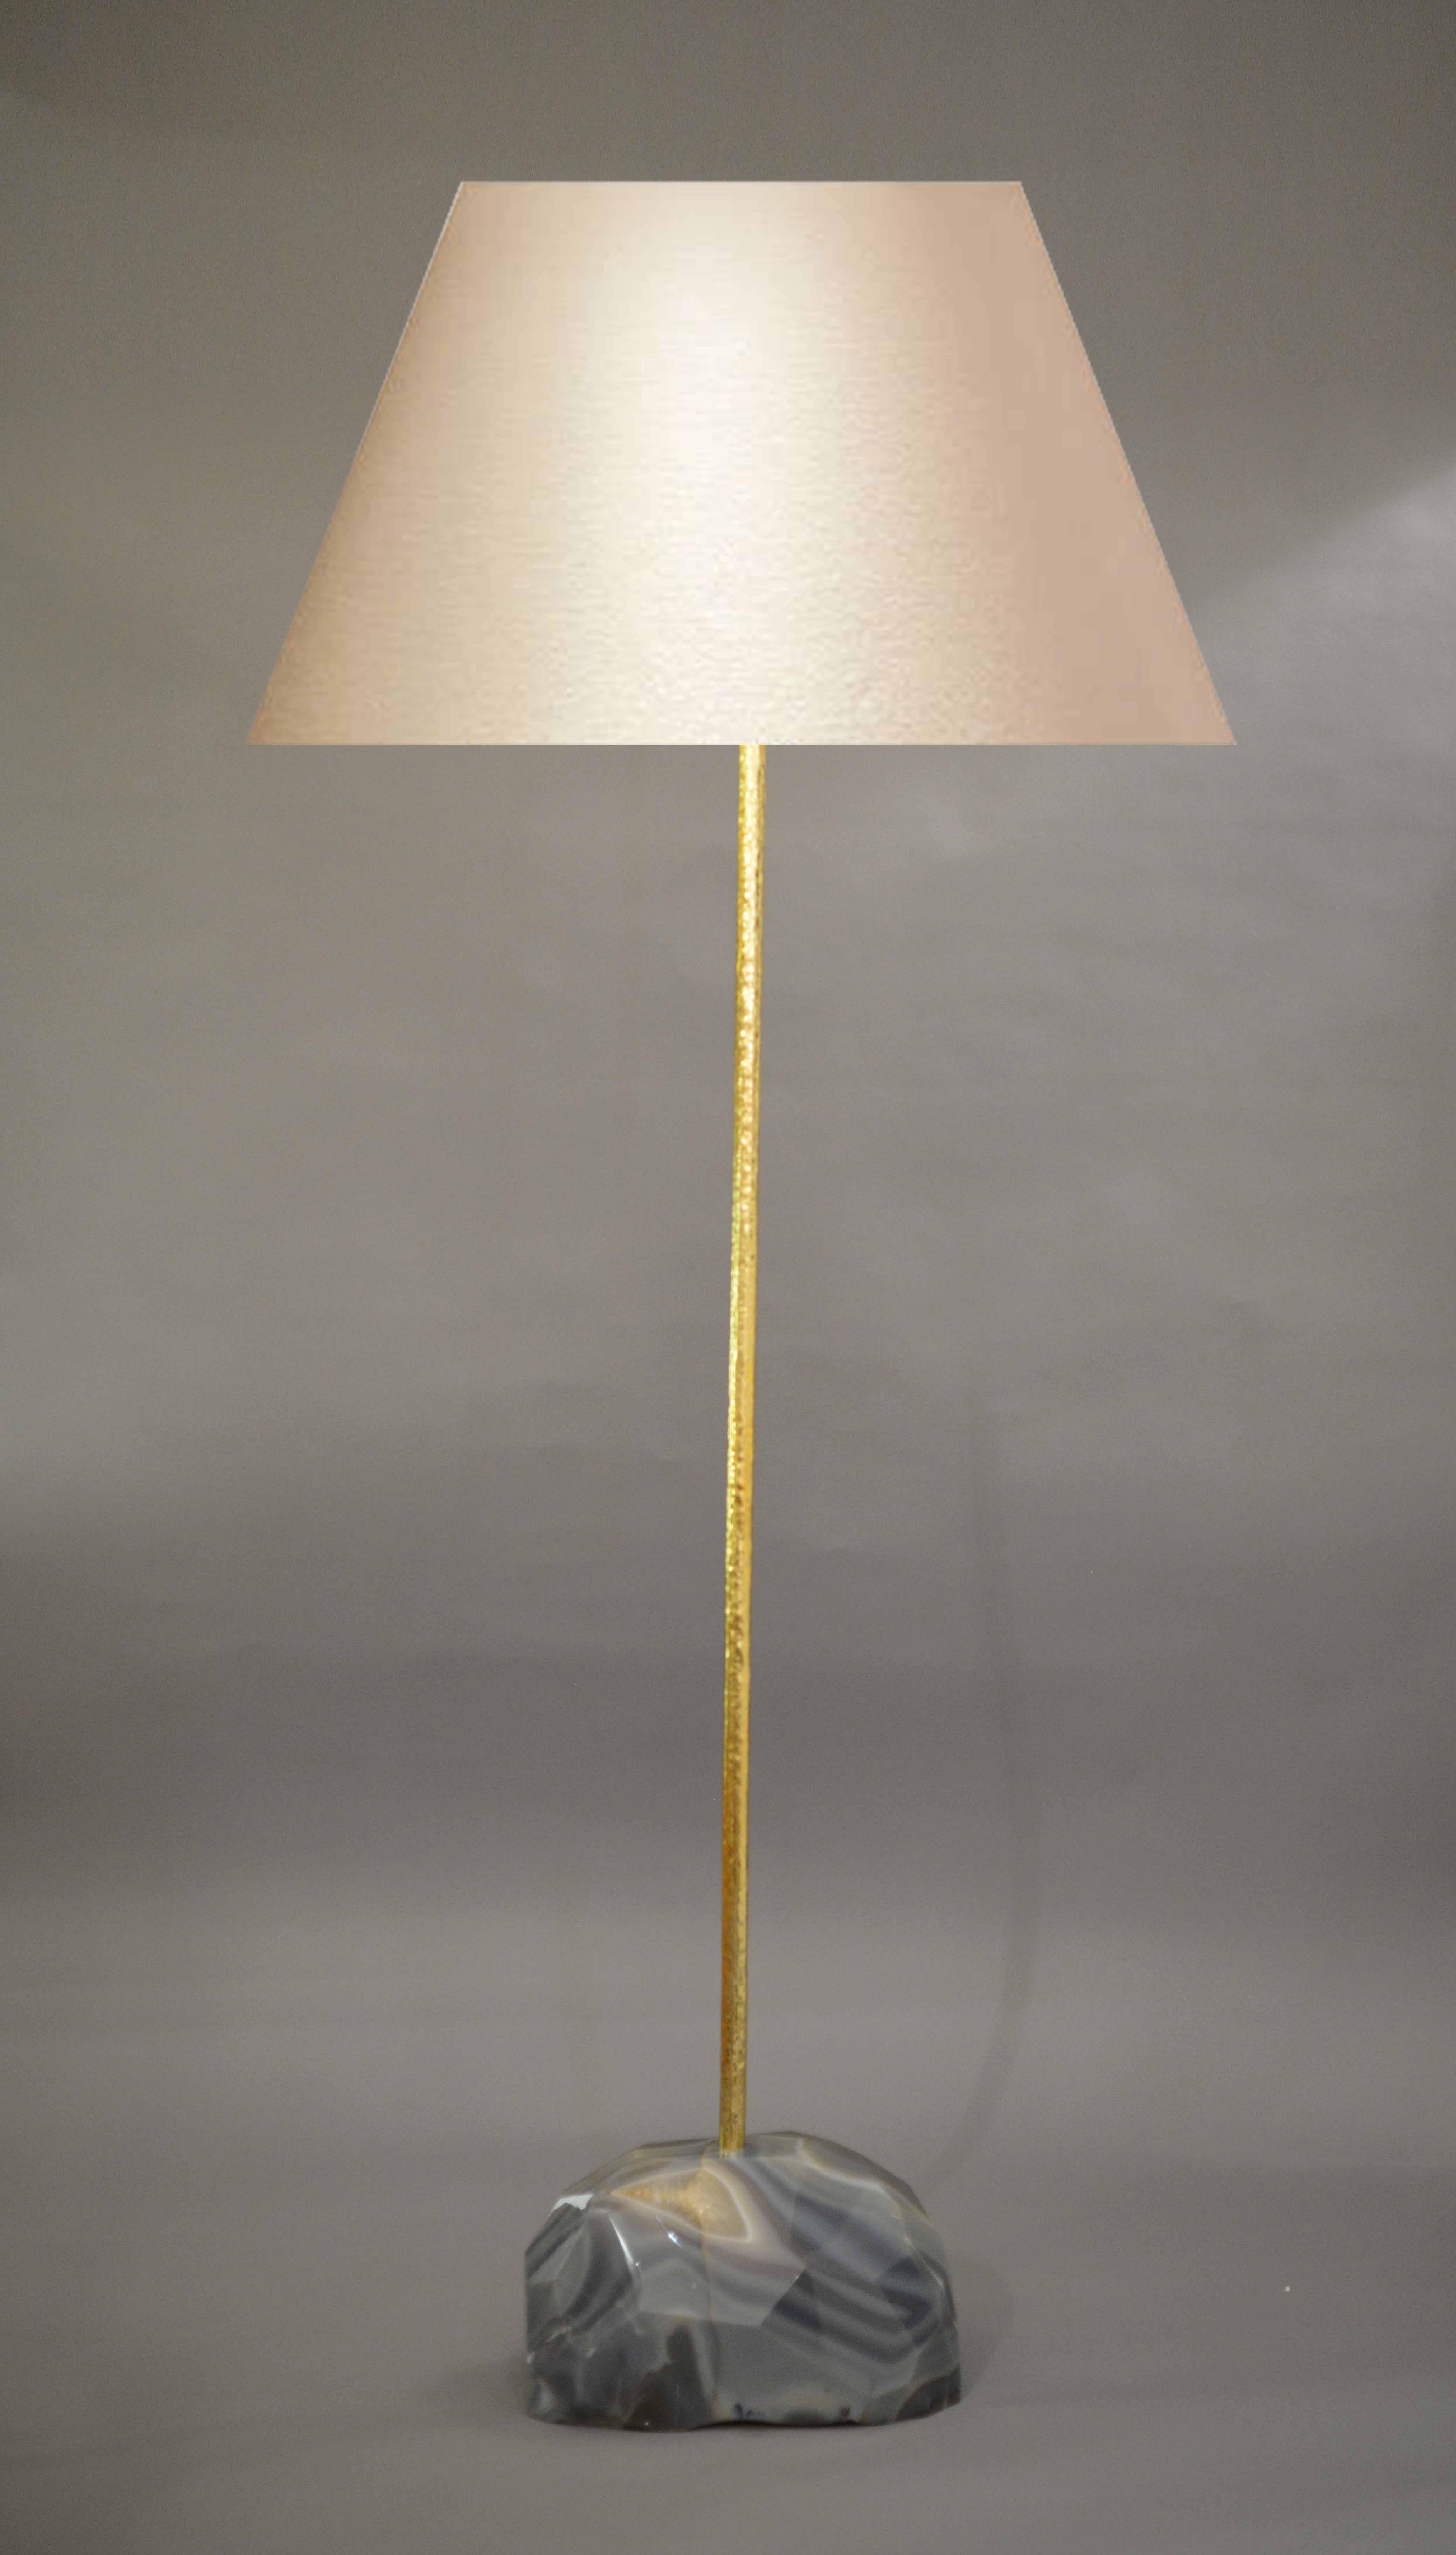 Eine fein geschnitzte Stehlampe aus Achat in geometrischer Form mit repoussiertem Mast, entworfen von Jian C.
(Lampenschirm nicht enthalten).